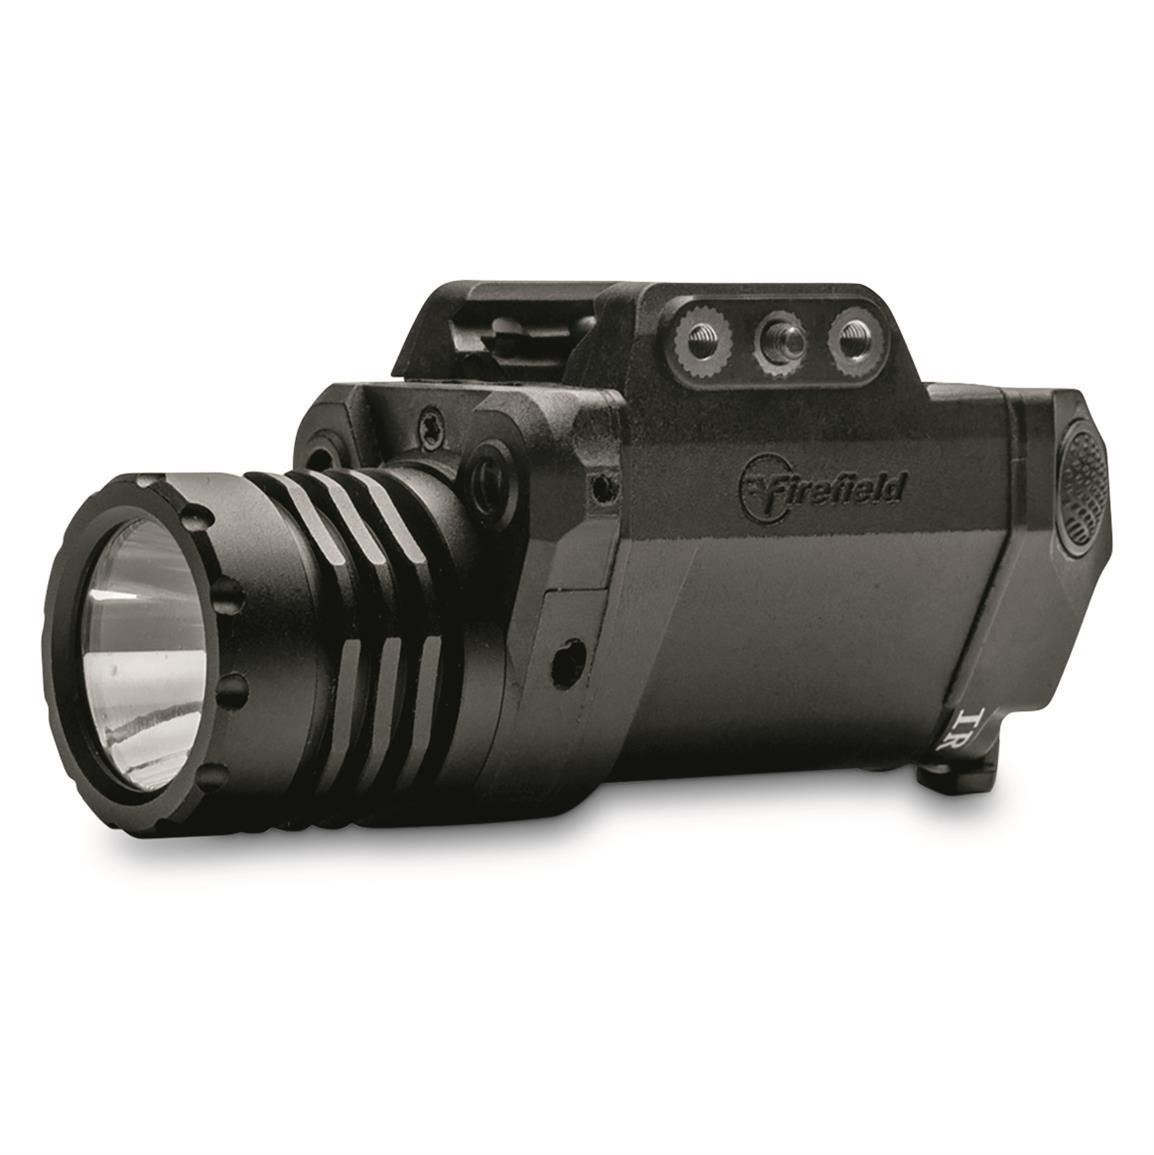 Firefield BattleTek Tactical Light with Green Laser and IR Illuminator